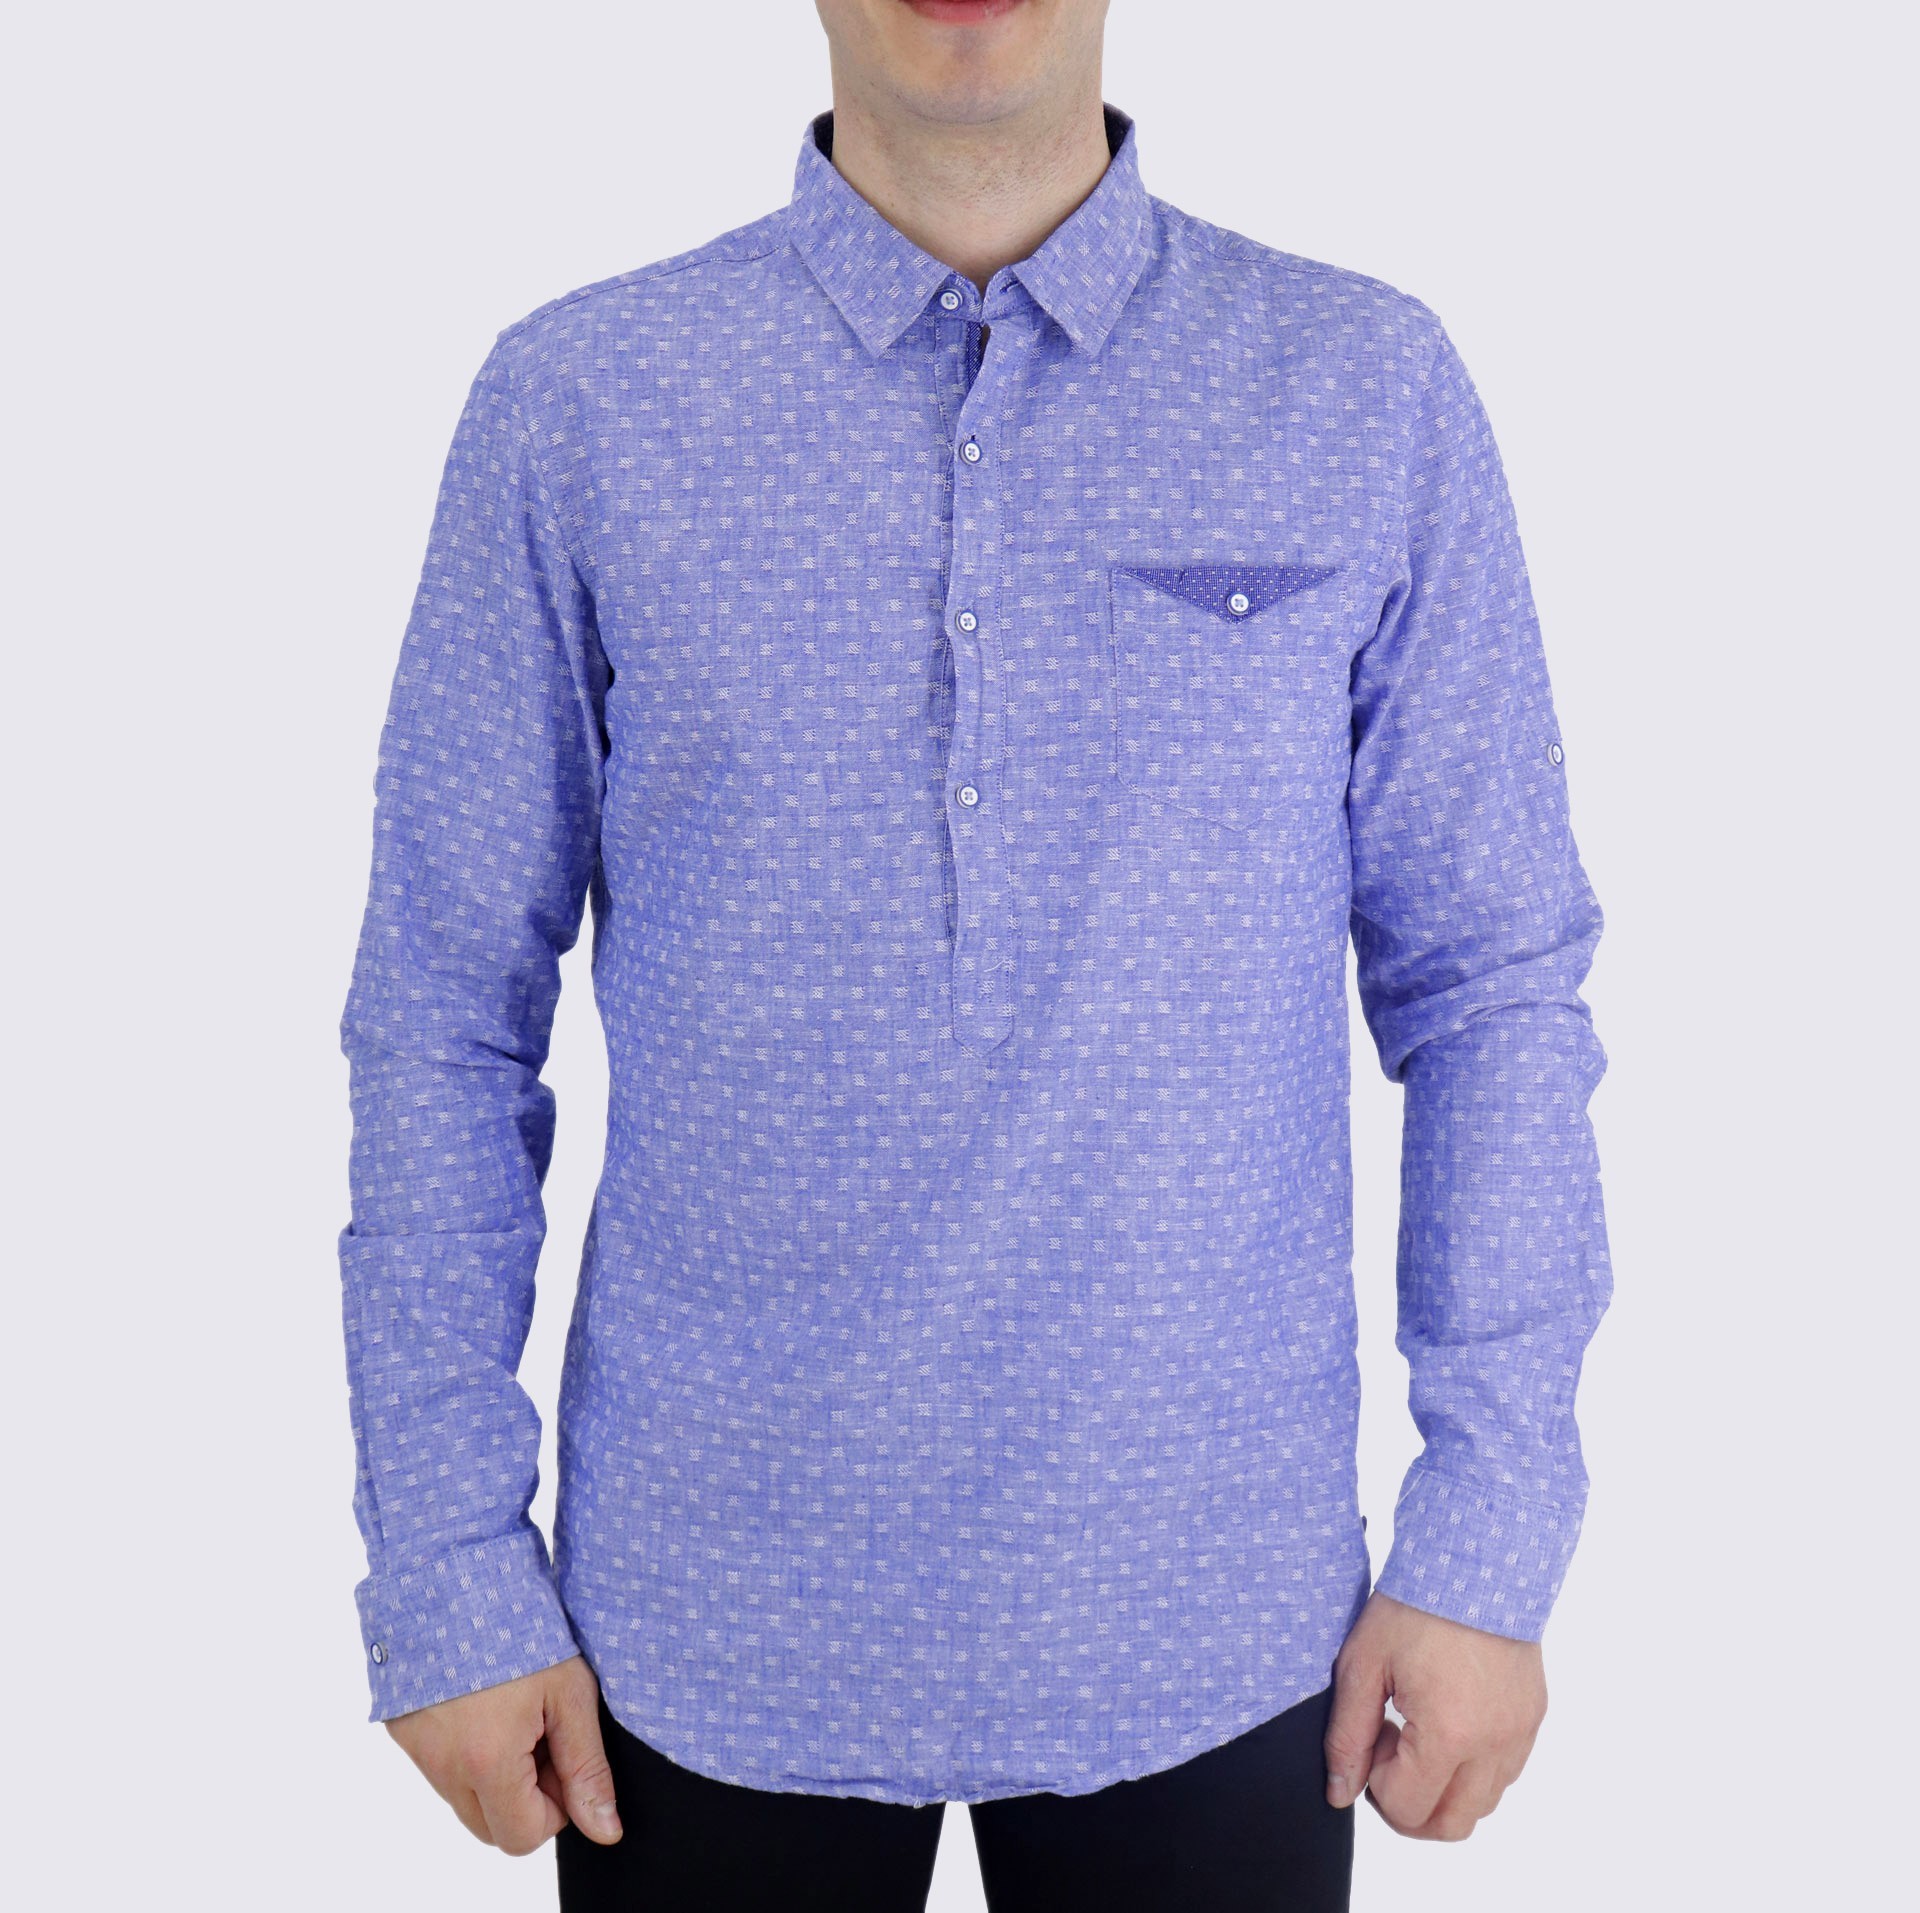 Ανδρικό πουκάμισο μπλούζα γαλάζιο λινό